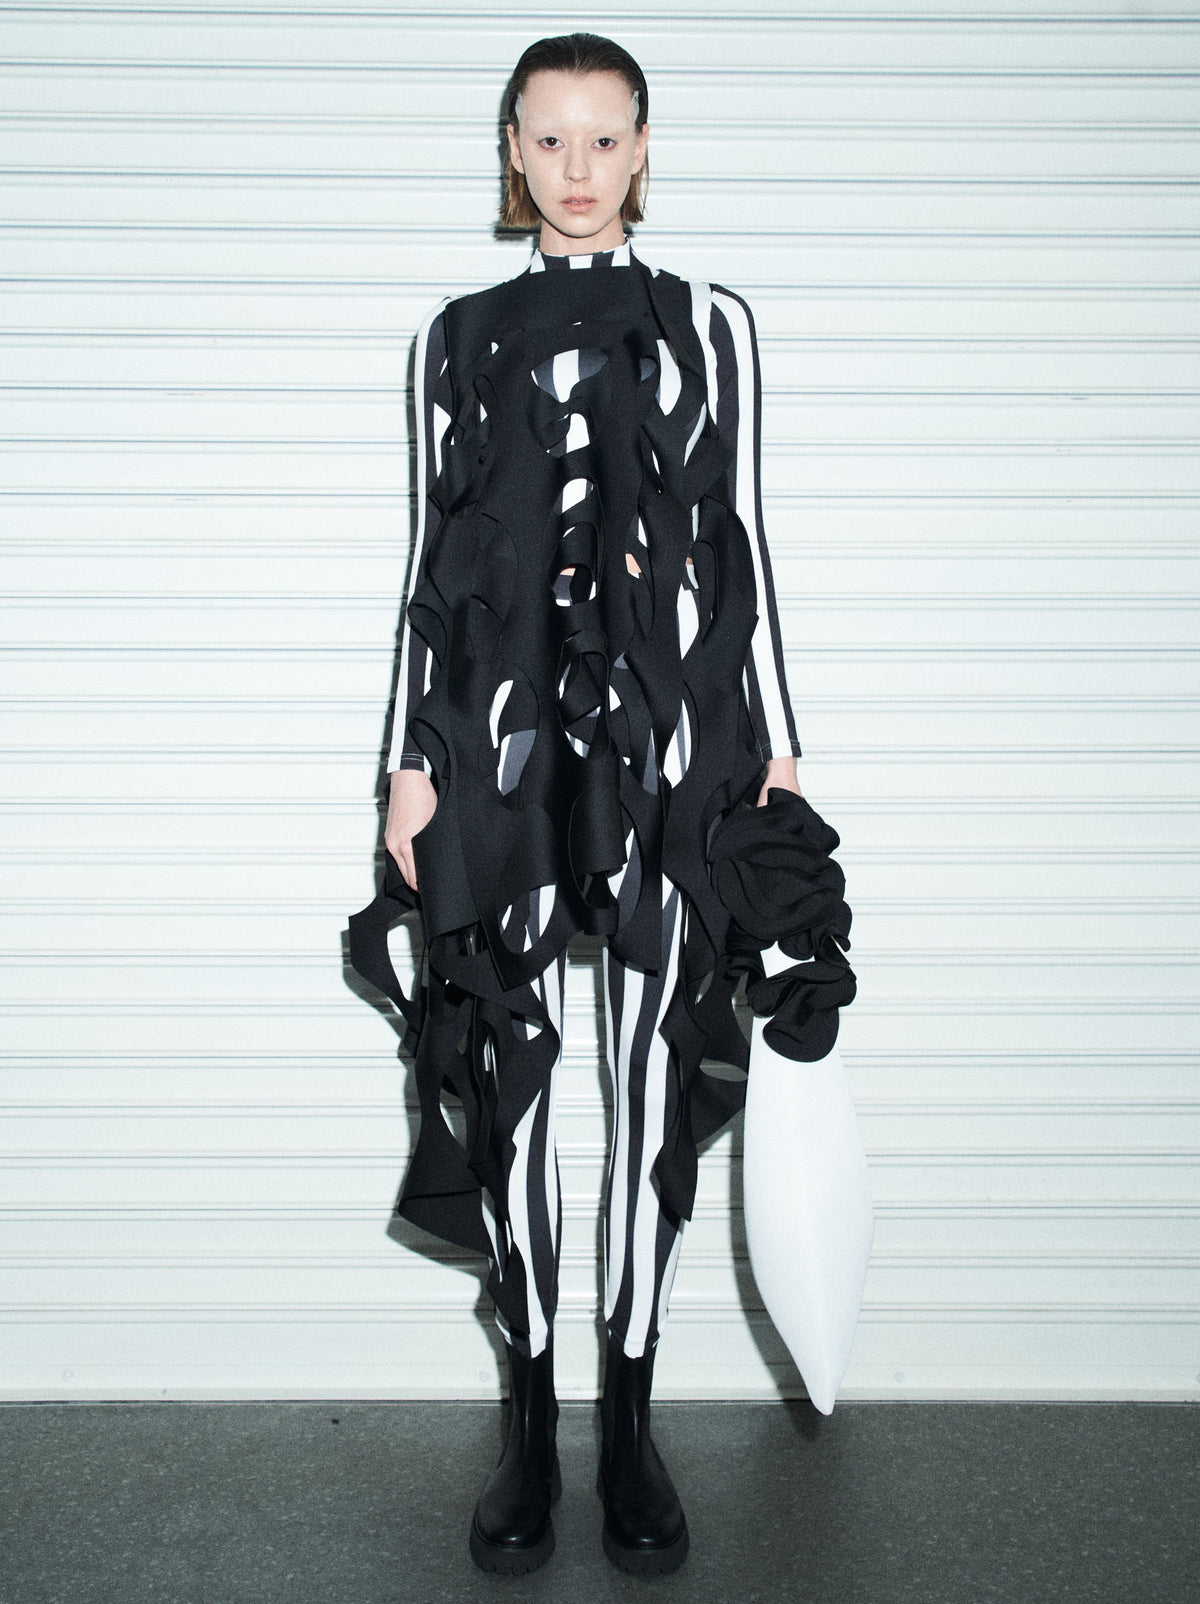 A-JANE Scifonic Sculptural Art Dress | MTM